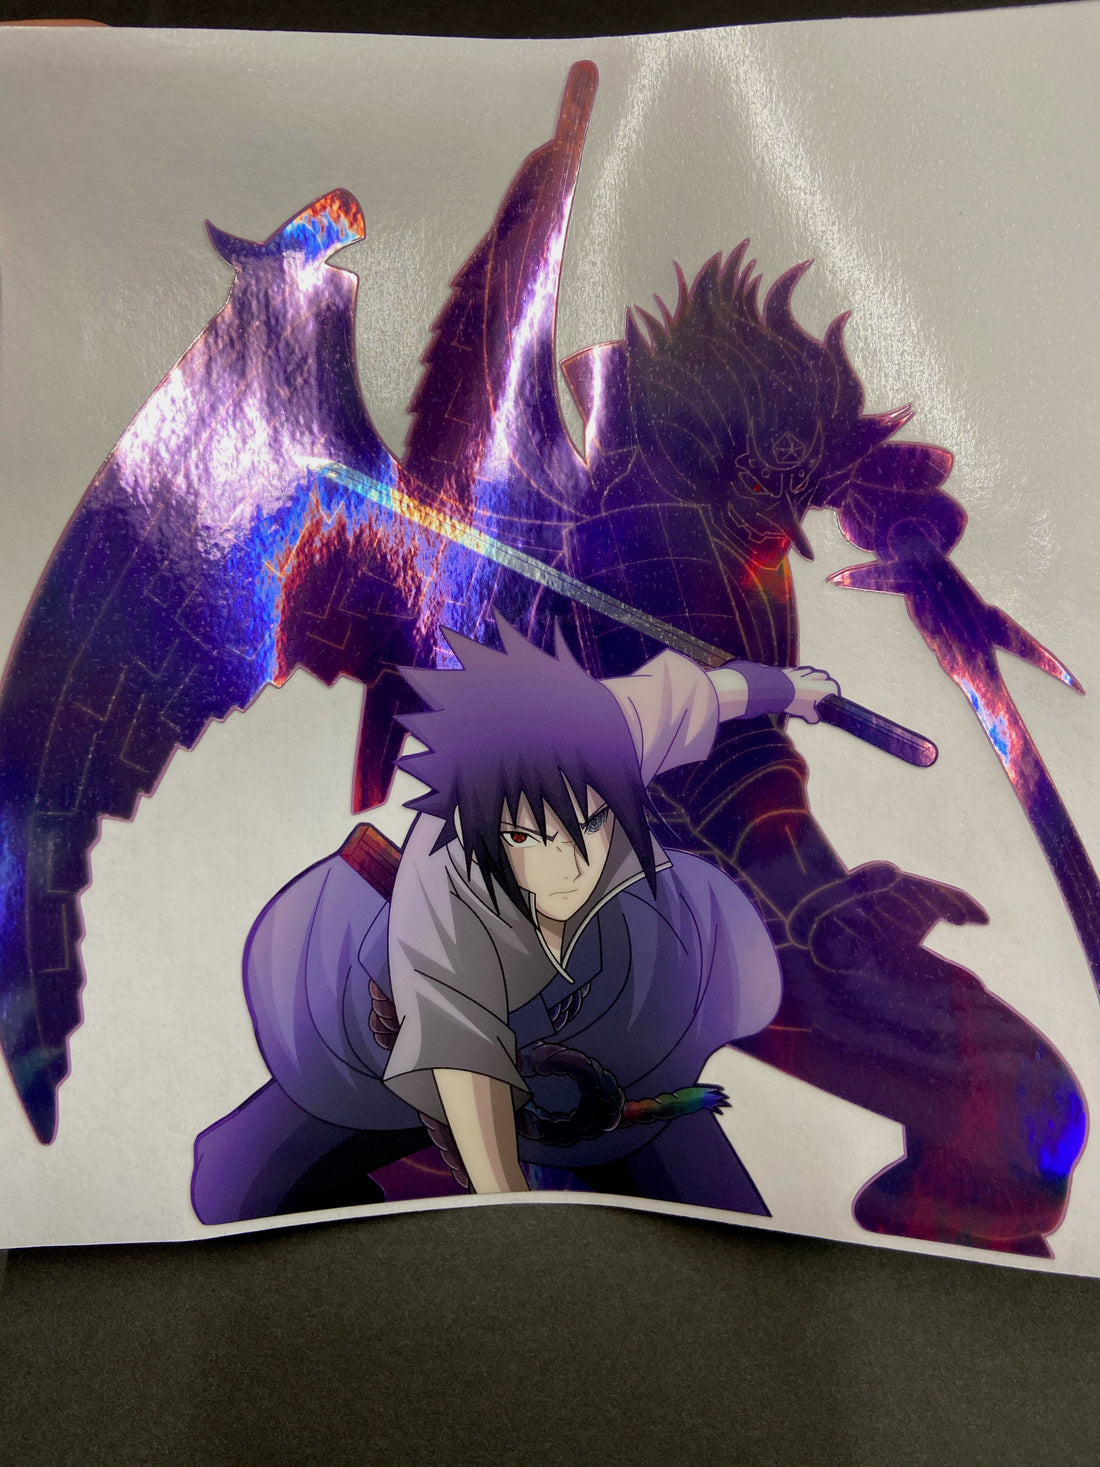 Uchiha Sasuke- The Avenger